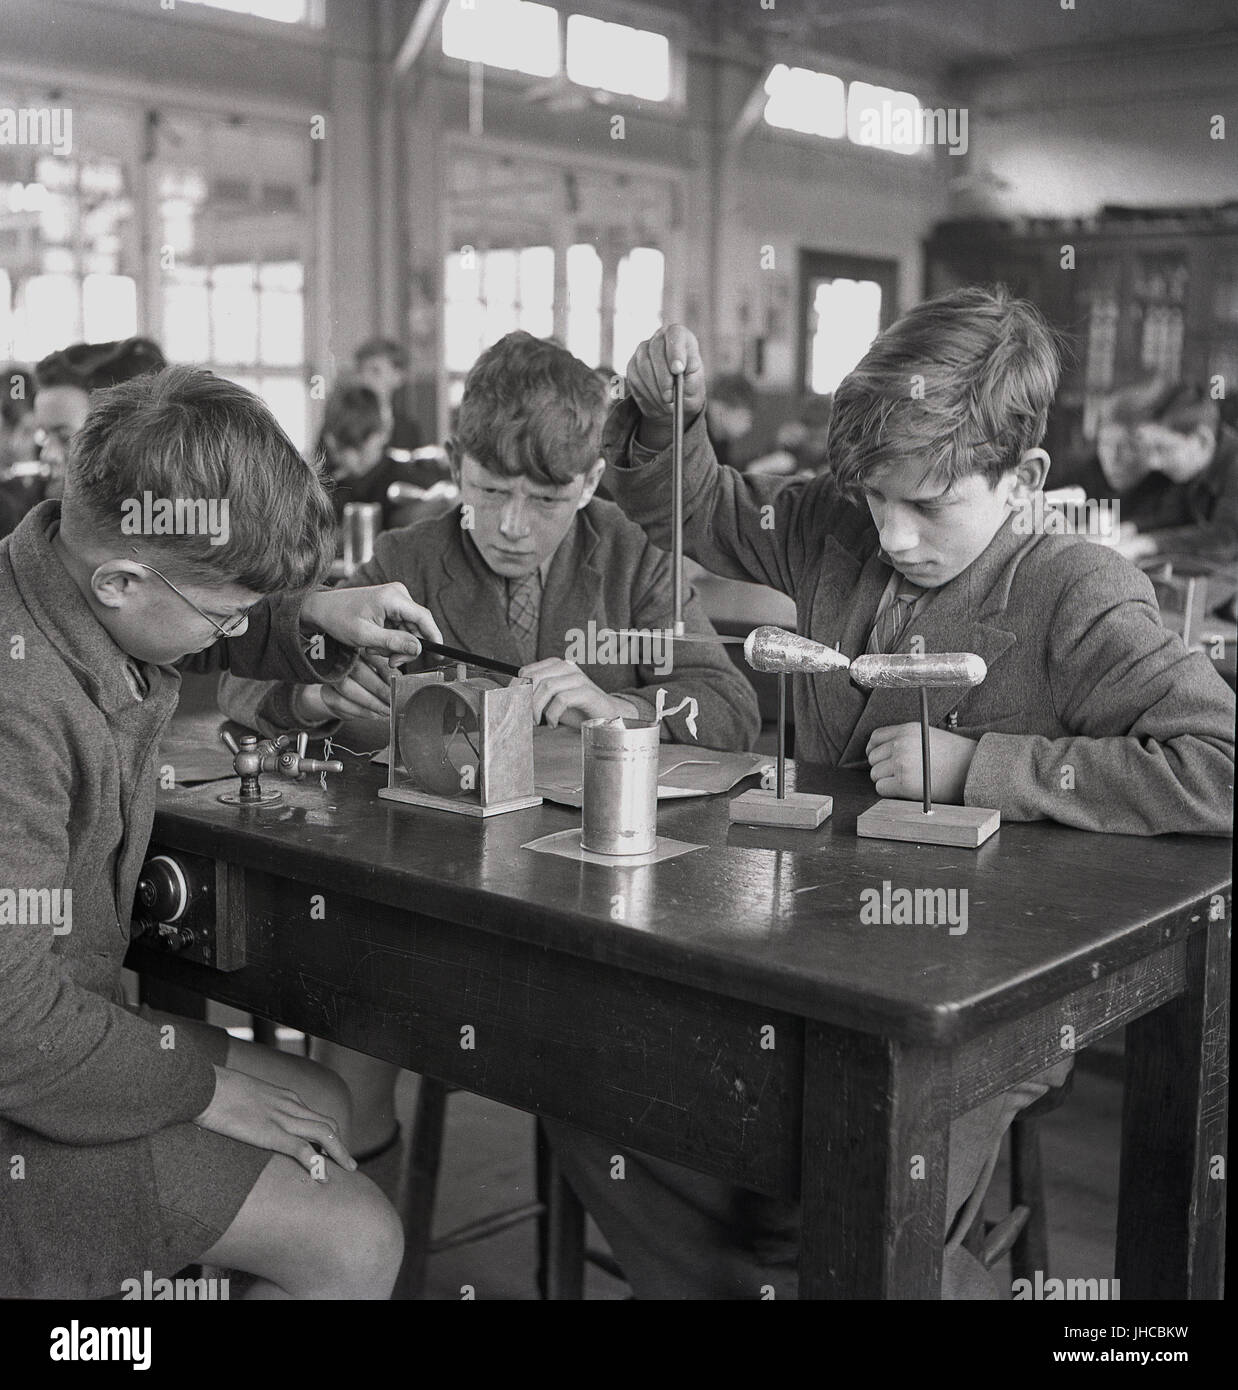 Années 1950, historiques, trois garçons à l'école secondaire, Sidcup moderne une école d'État britannique, l'expérimentation de différents modèles d'échelle dans une leçon de science. Banque D'Images